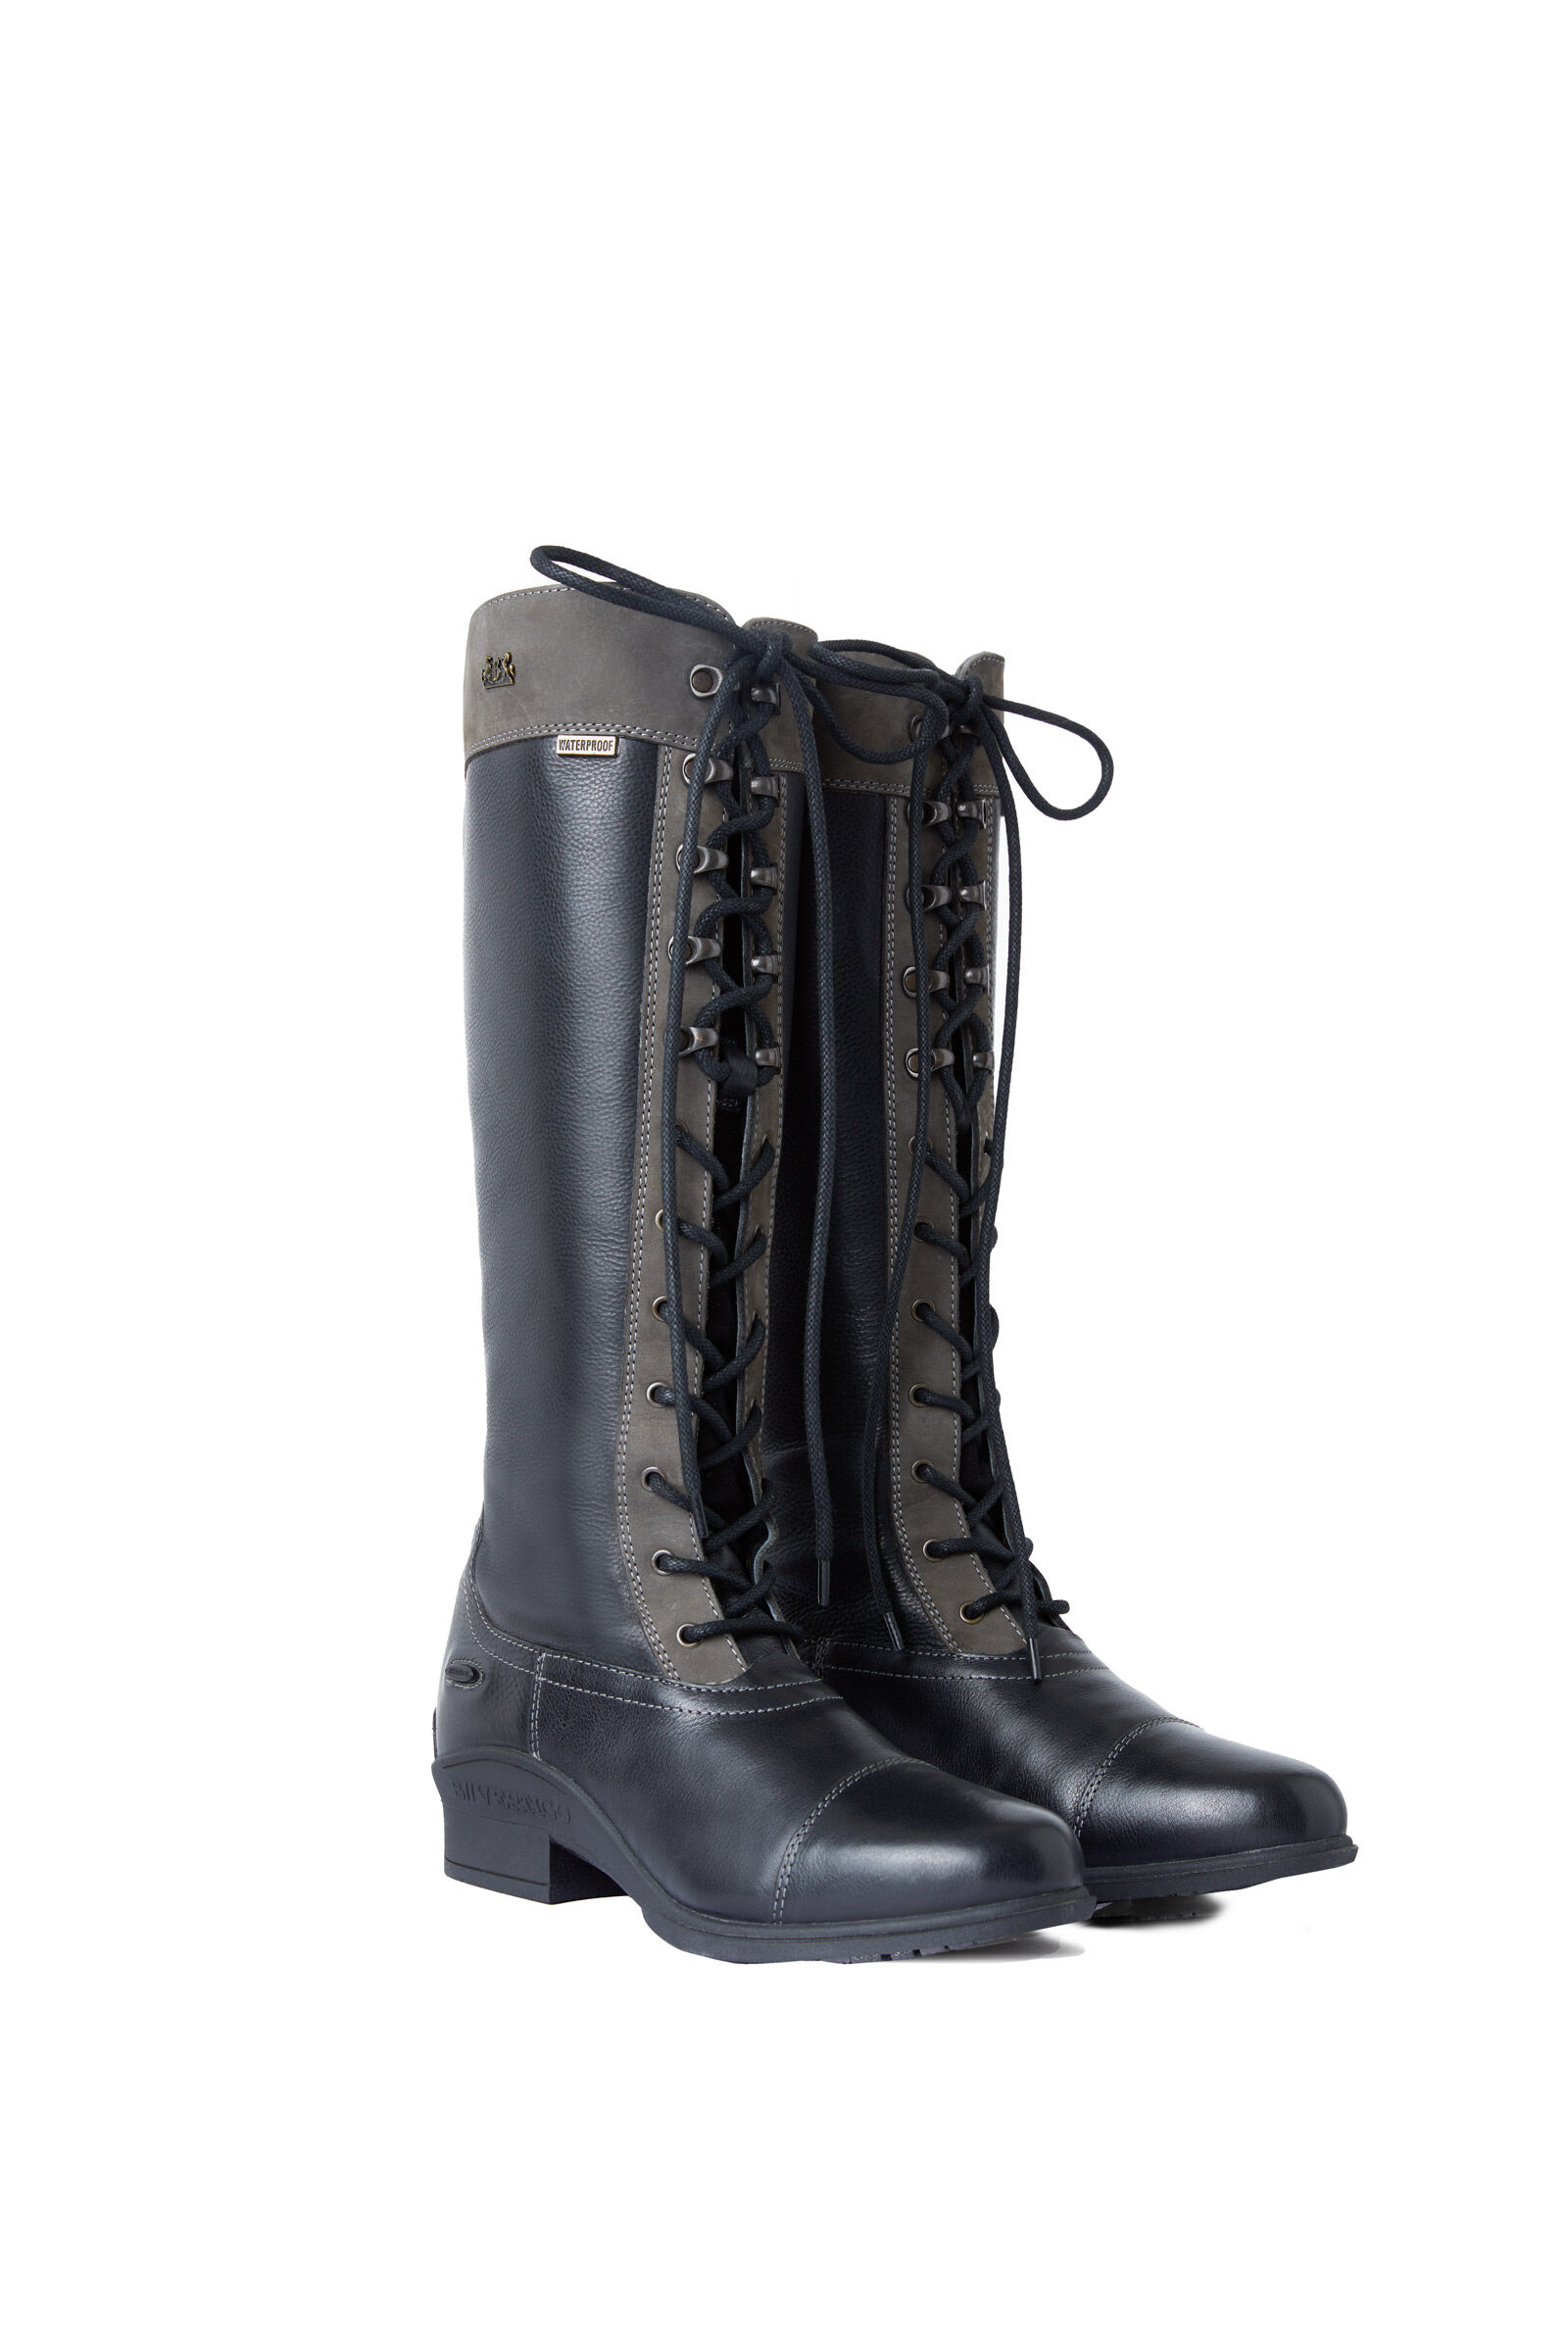 B Vertigo Cetus Women's Waterproof Tall Boots